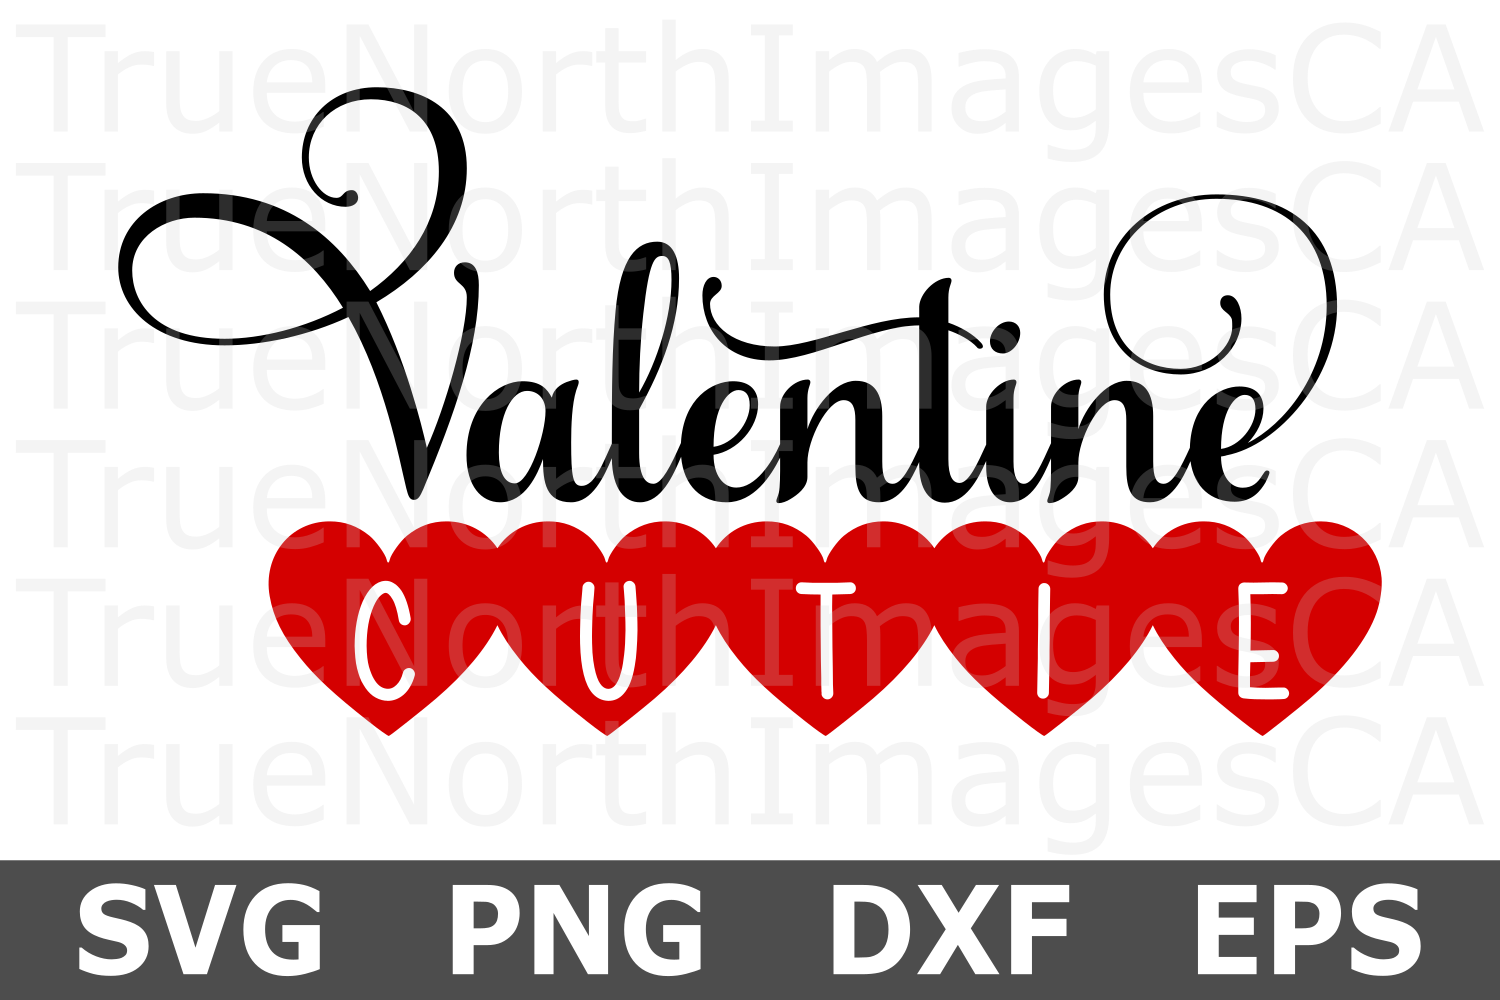 Valentine Cutie - A Valentine SVG Cut File